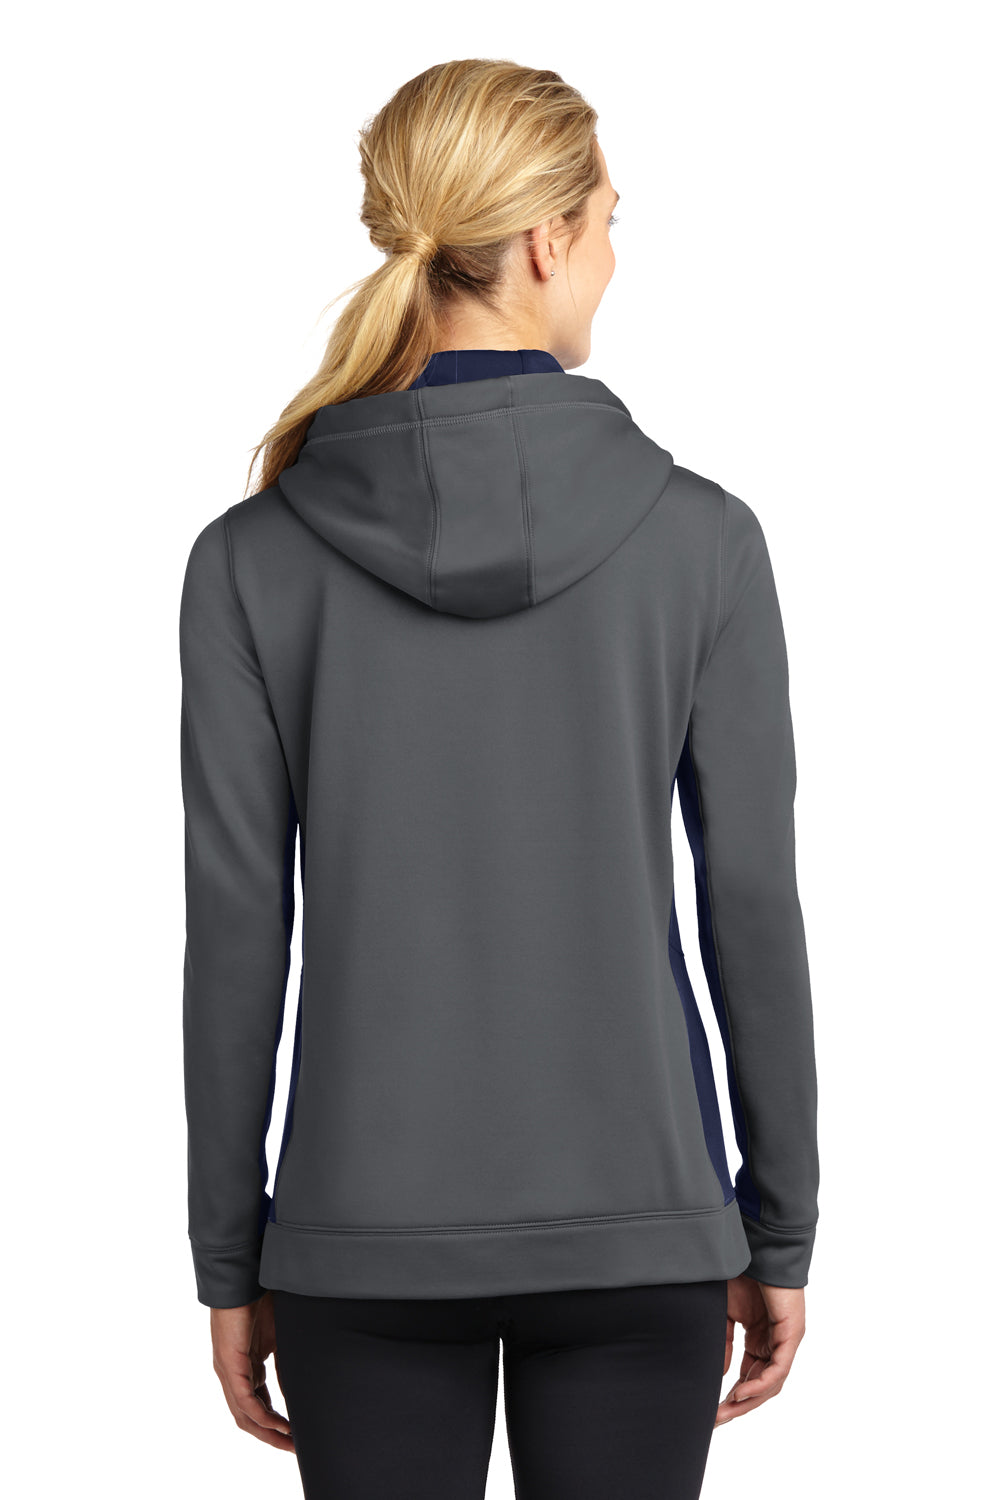 Sport-Tek LST235 Womens Sport-Wick Moisture Wicking Fleece Hooded Sweatshirt Hoodie Dark Grey/Navy Blue Back